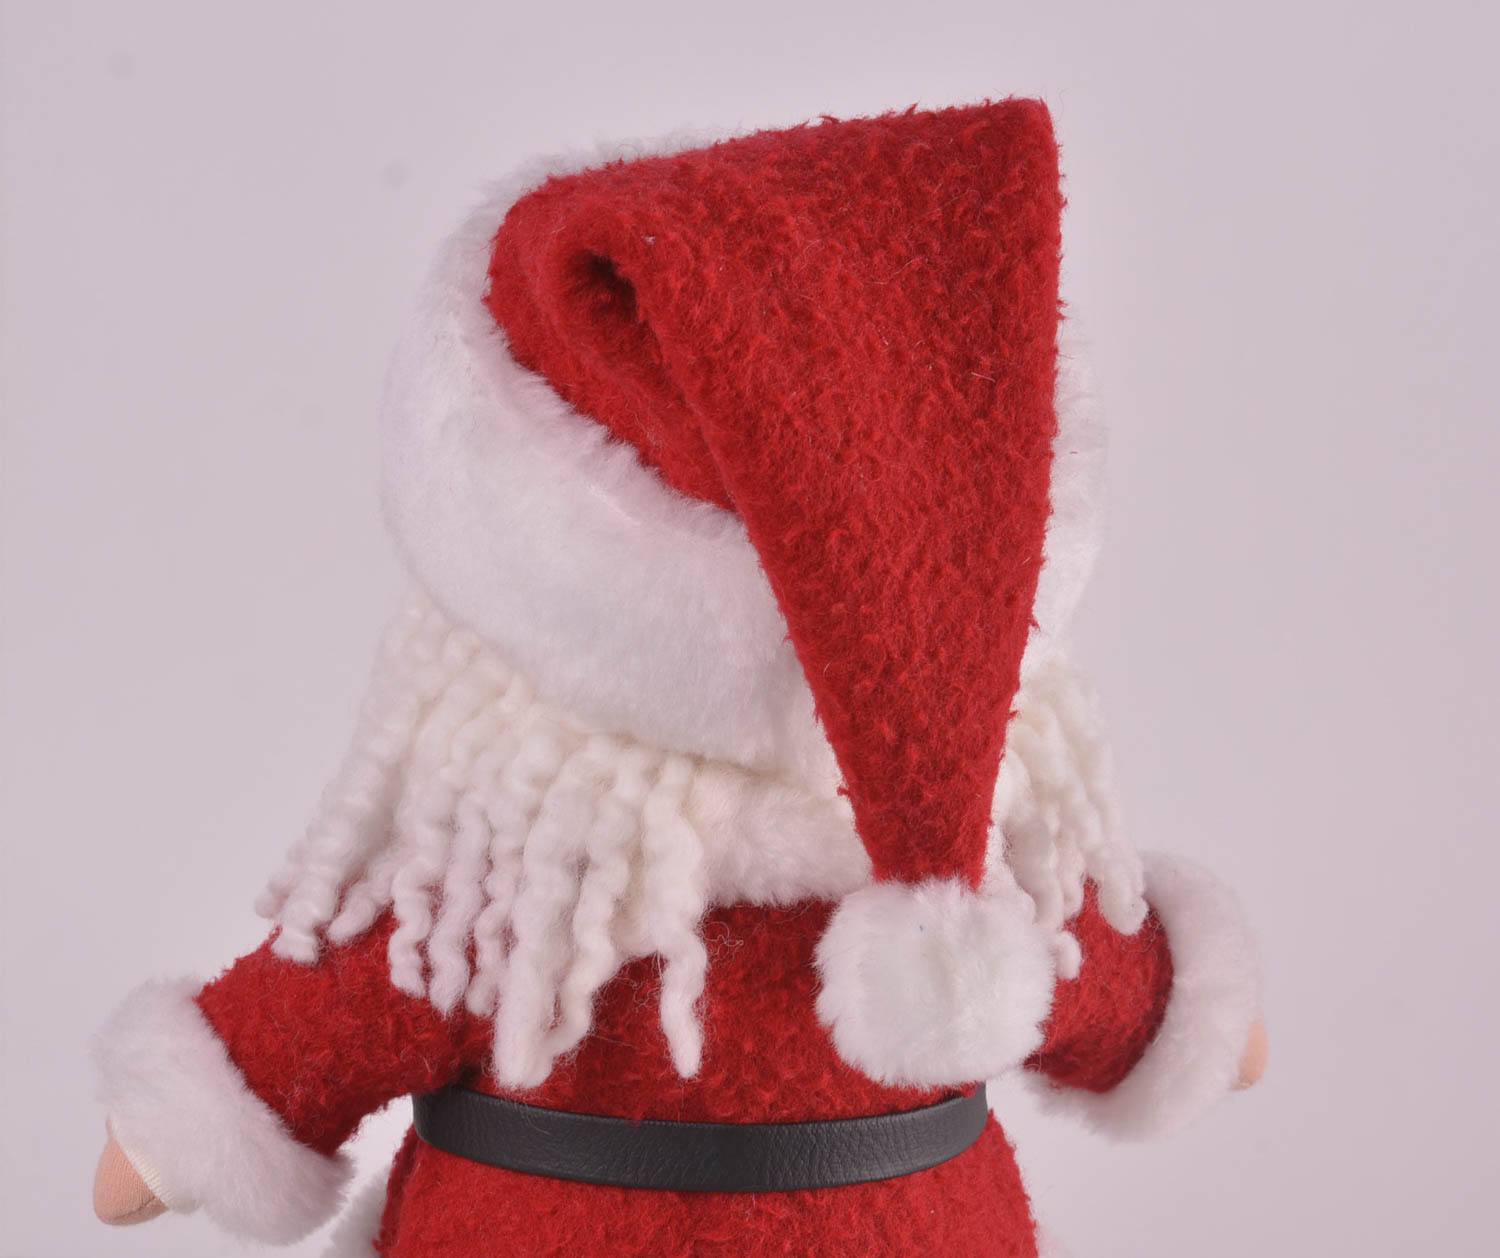 Игрушка Дед Мороз хэнд мэйд детская игрушка новогодняя мягкая игрушка из шерсти фото 3